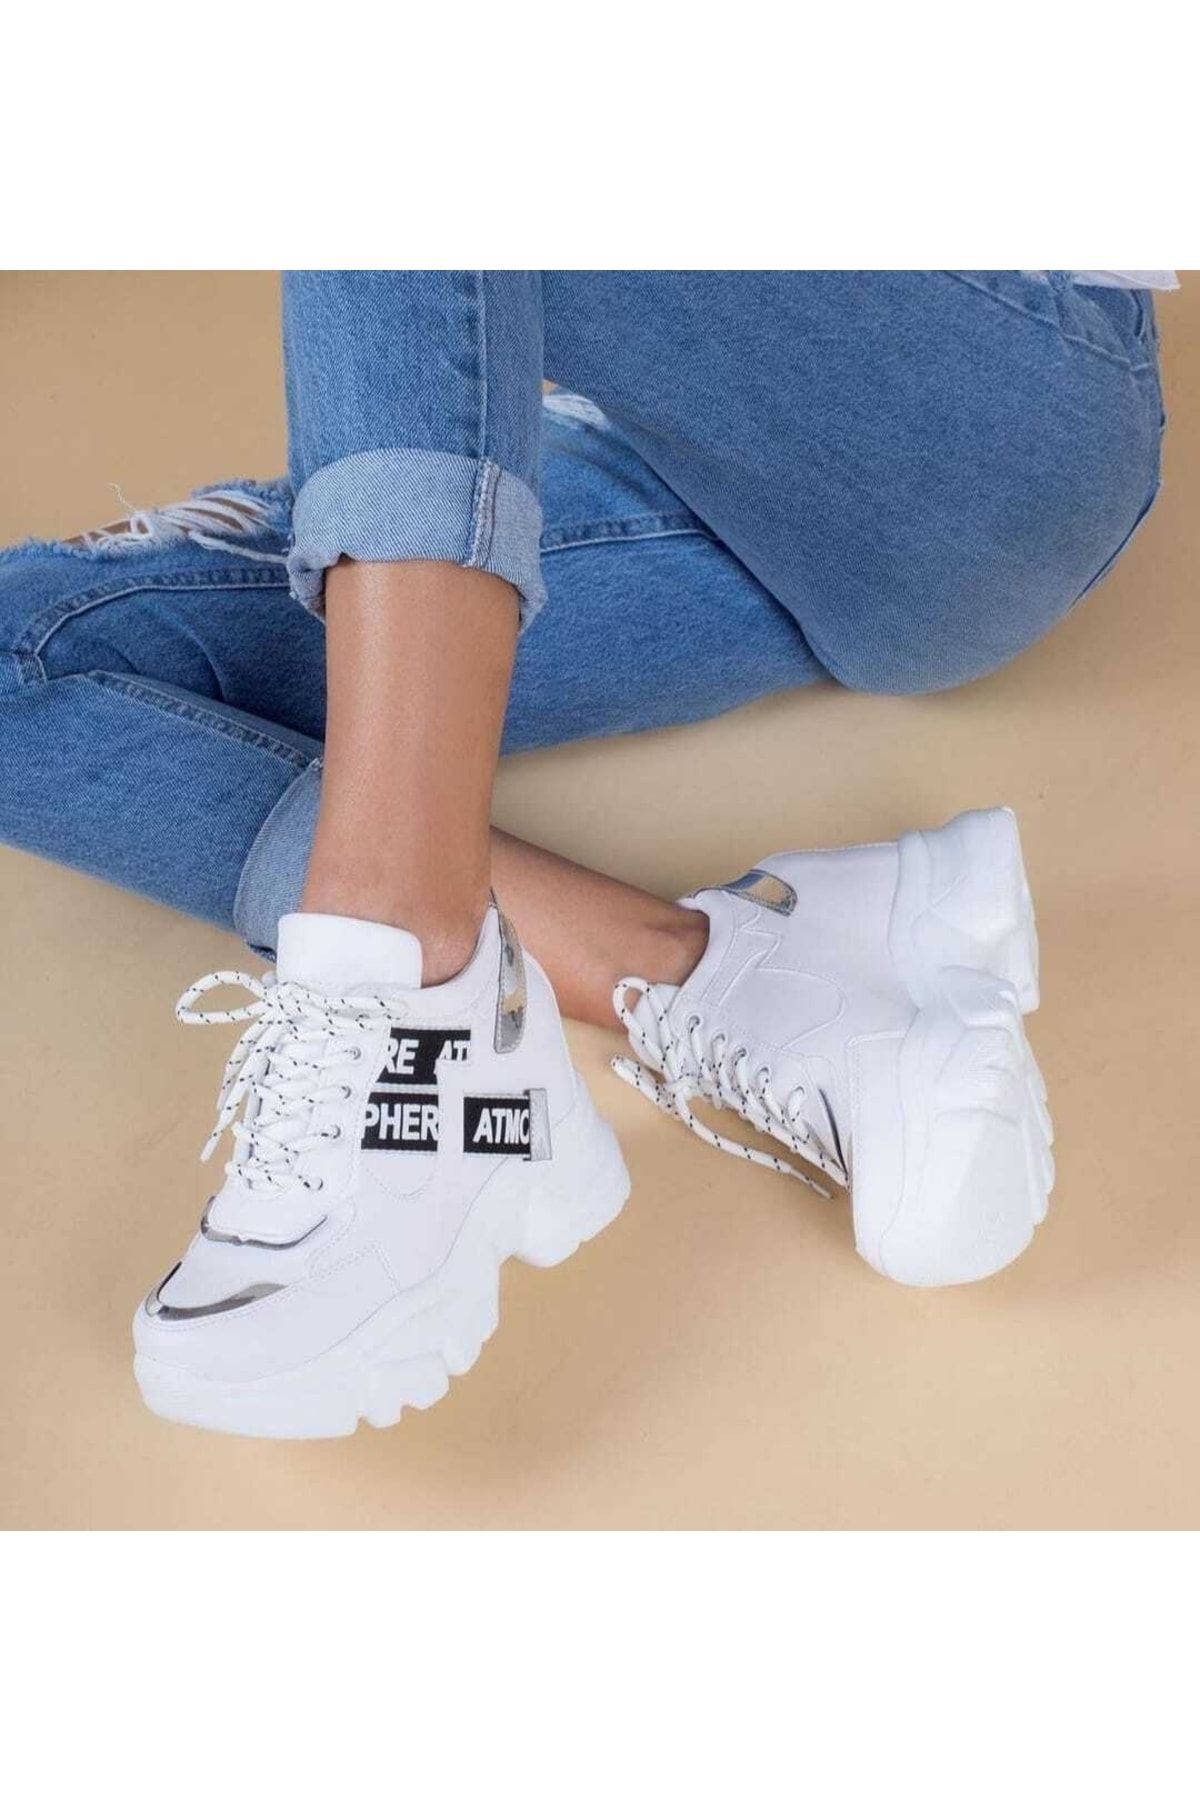 Afilli Kadın Beyaz Gizli Yüksek Taban Dolgu Platform Topuk Günlük Parlak Sneaker Spor Ayakkabı